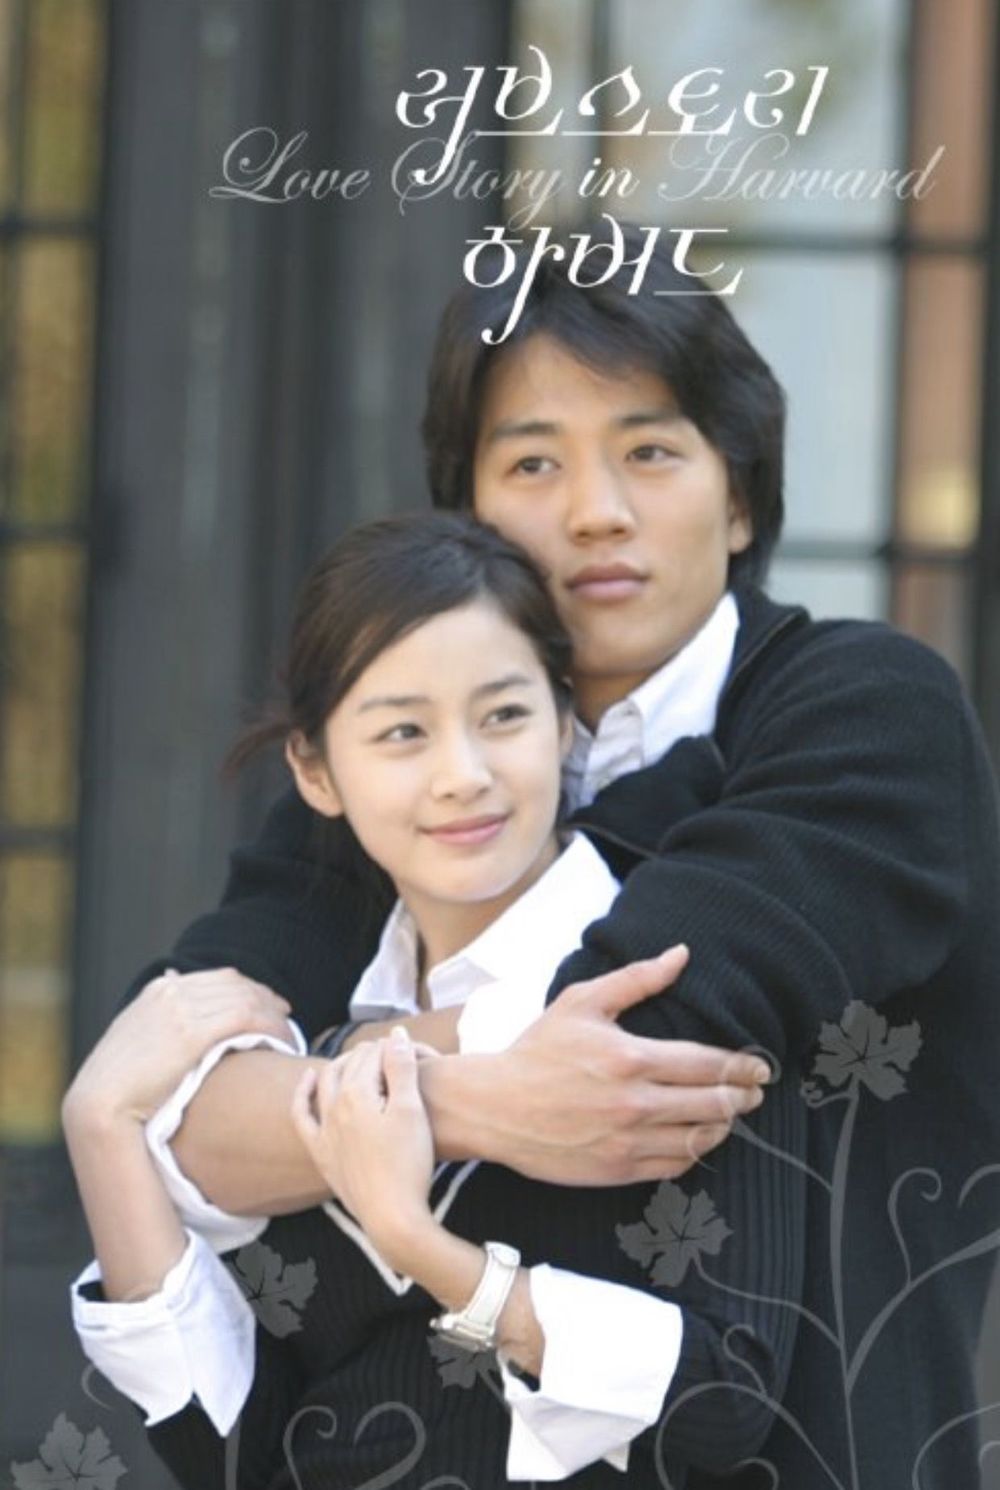 Love Story In Harvard là bộ phim đưa tên tuổi mỹ nhân Kim Tae Hee được biết tới nhiều hơn (Ảnh: Pinterest)